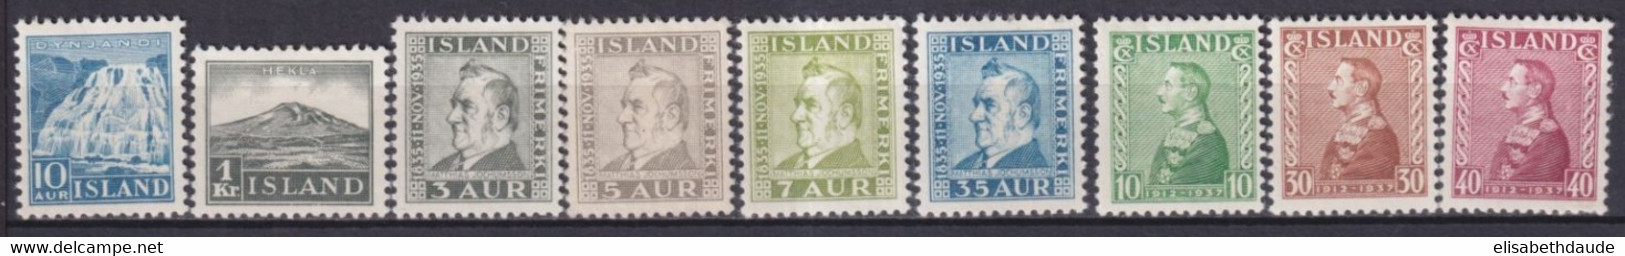 ISLANDE - 1935/1937 - YVERT N° 158/166 * MLH - COTE = 109 EUR. - Ongebruikt